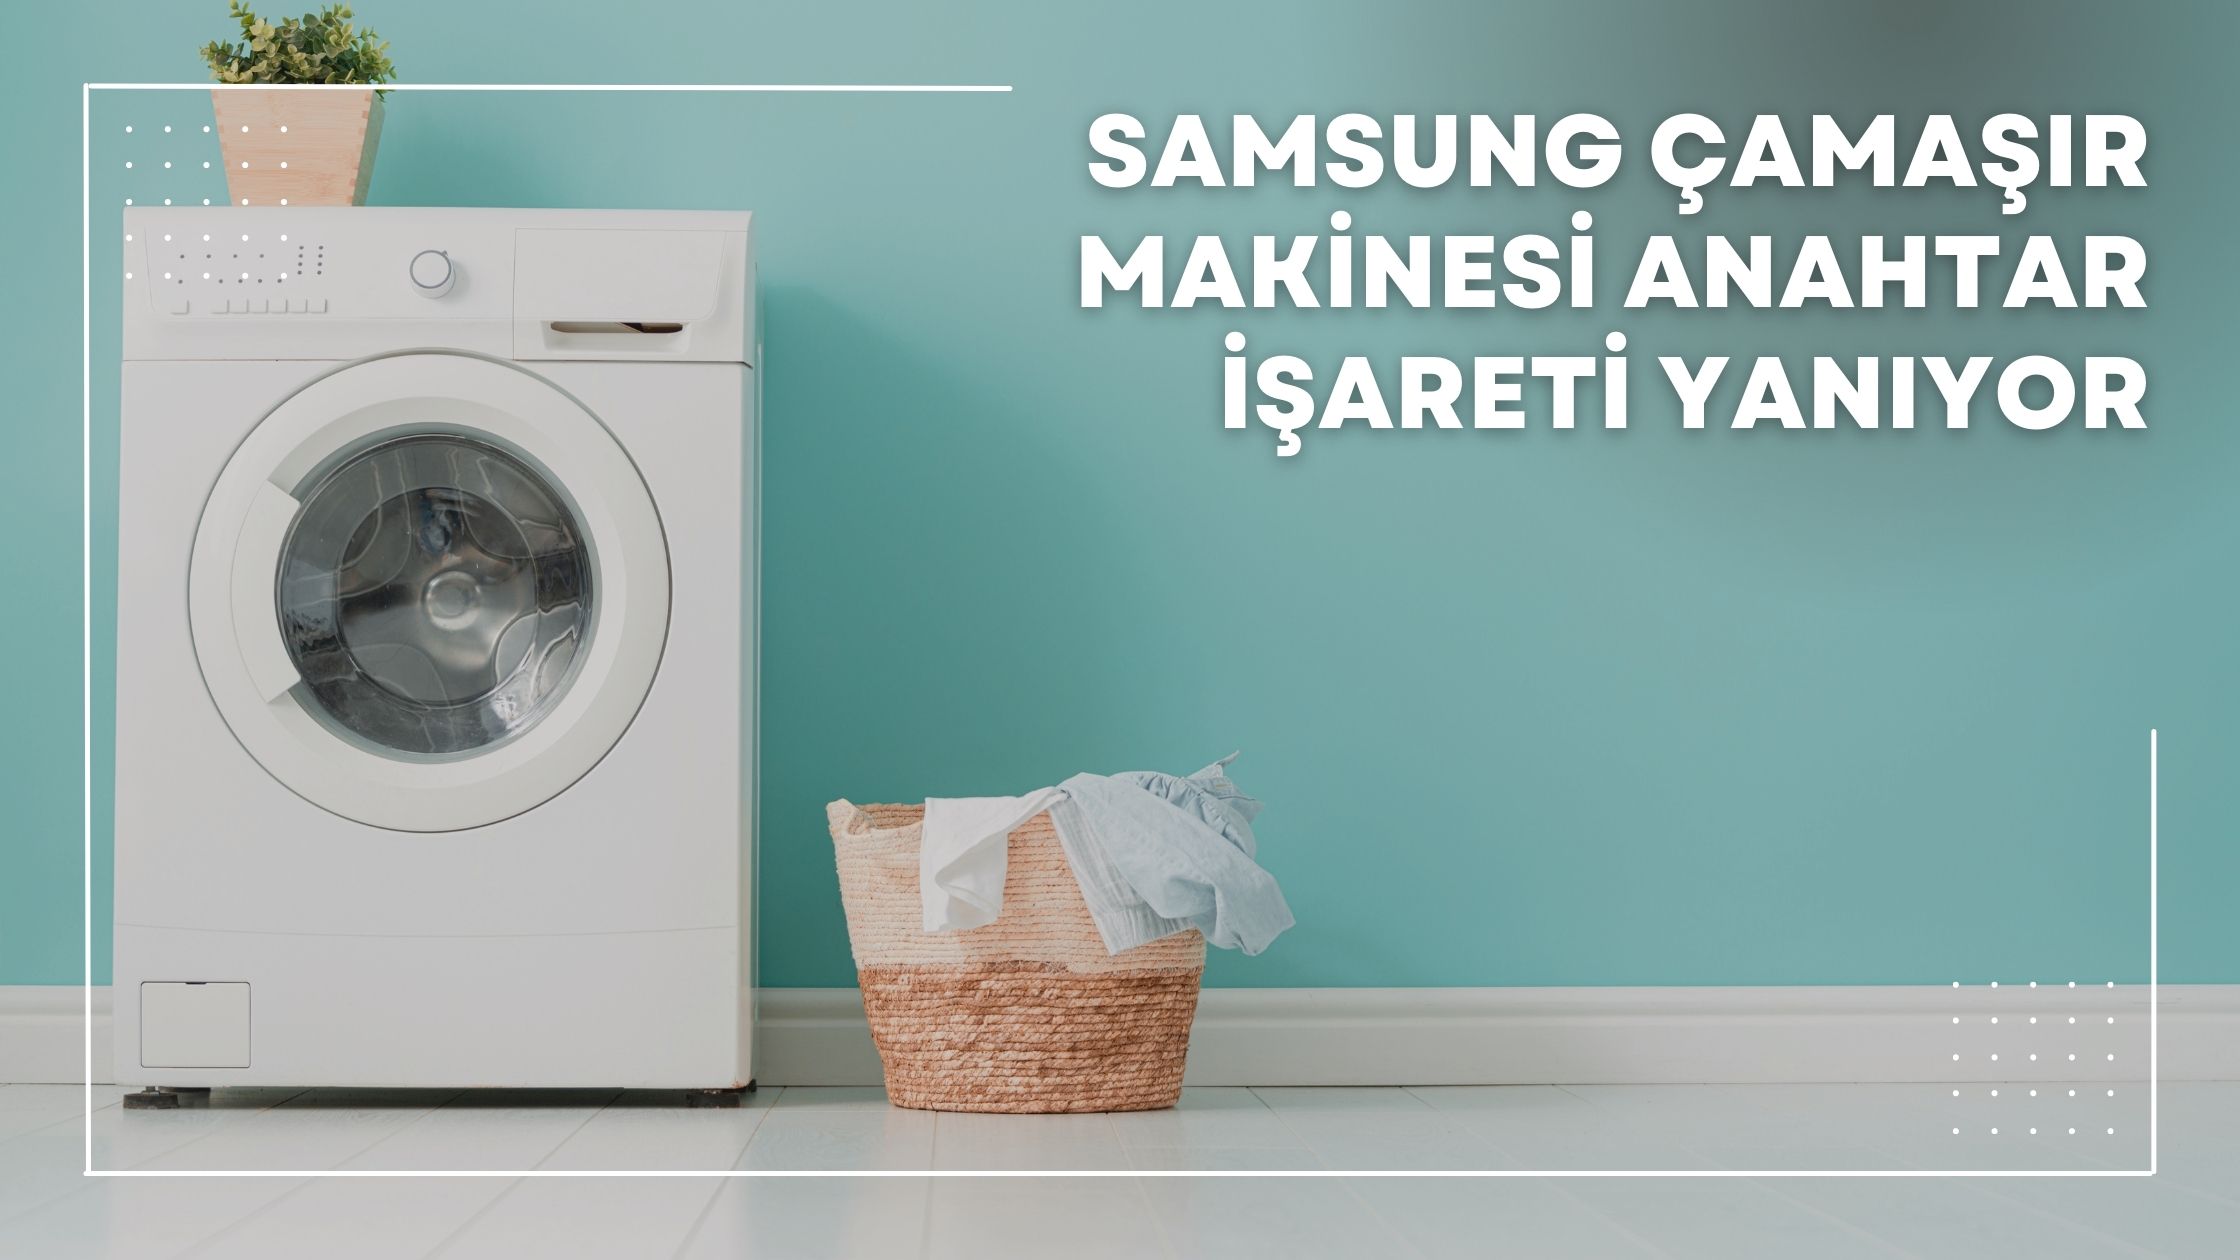 Samsung Çamaşır Makinesi Anahtar İşareti Yanıyor